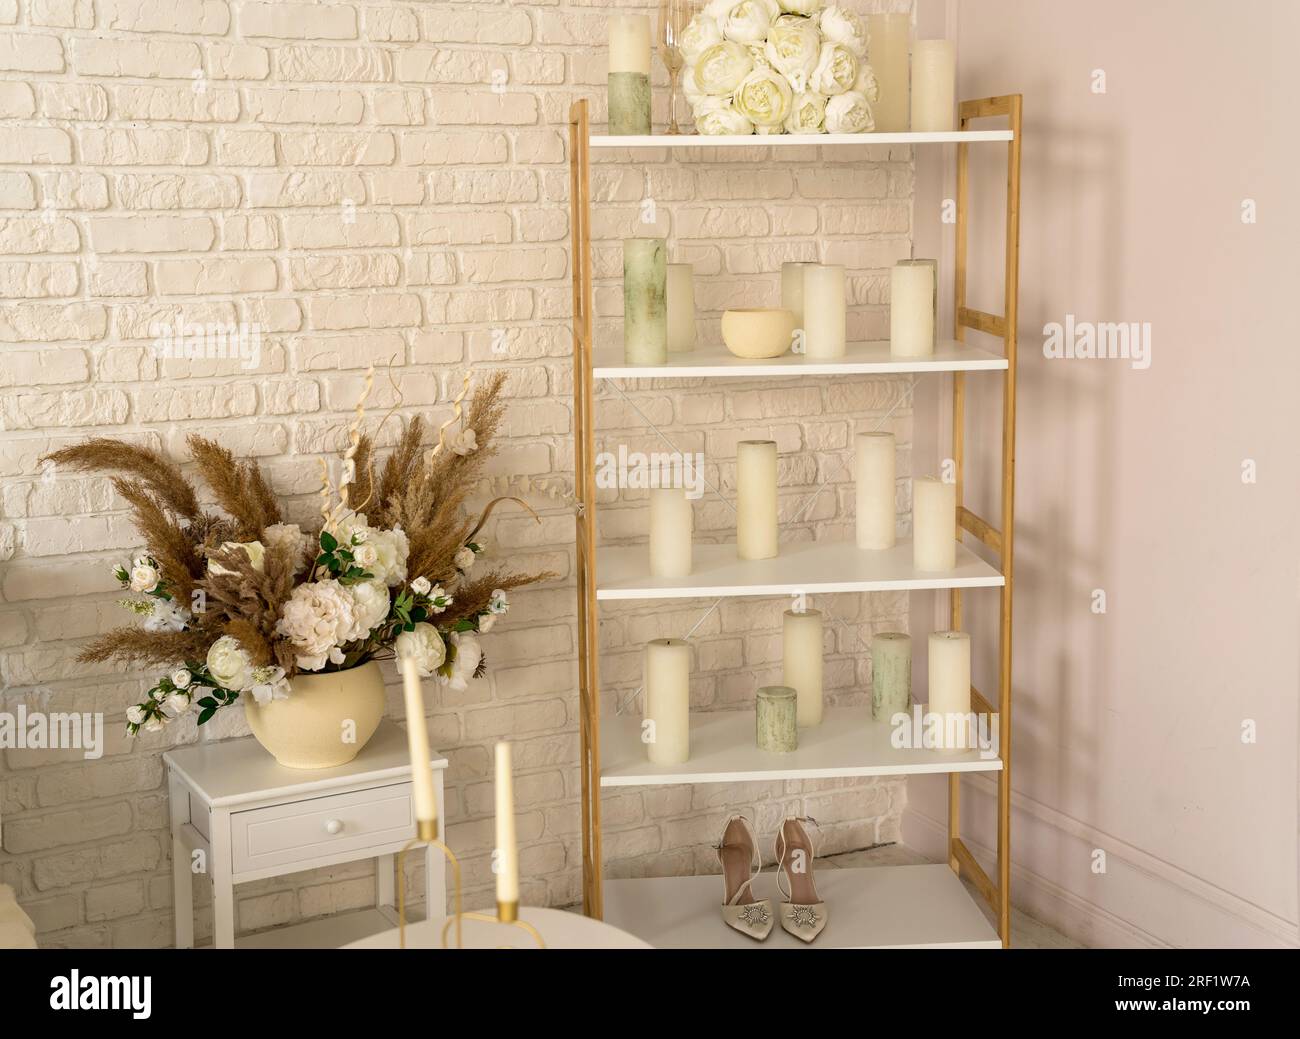 Hochzeitszimmer. Auf dem Regal liegt ein weißer Strauß aus Brautblumen, Kerzen, Gläsern und Schuhen. Wunderschöner Hintergrund. Stockfoto